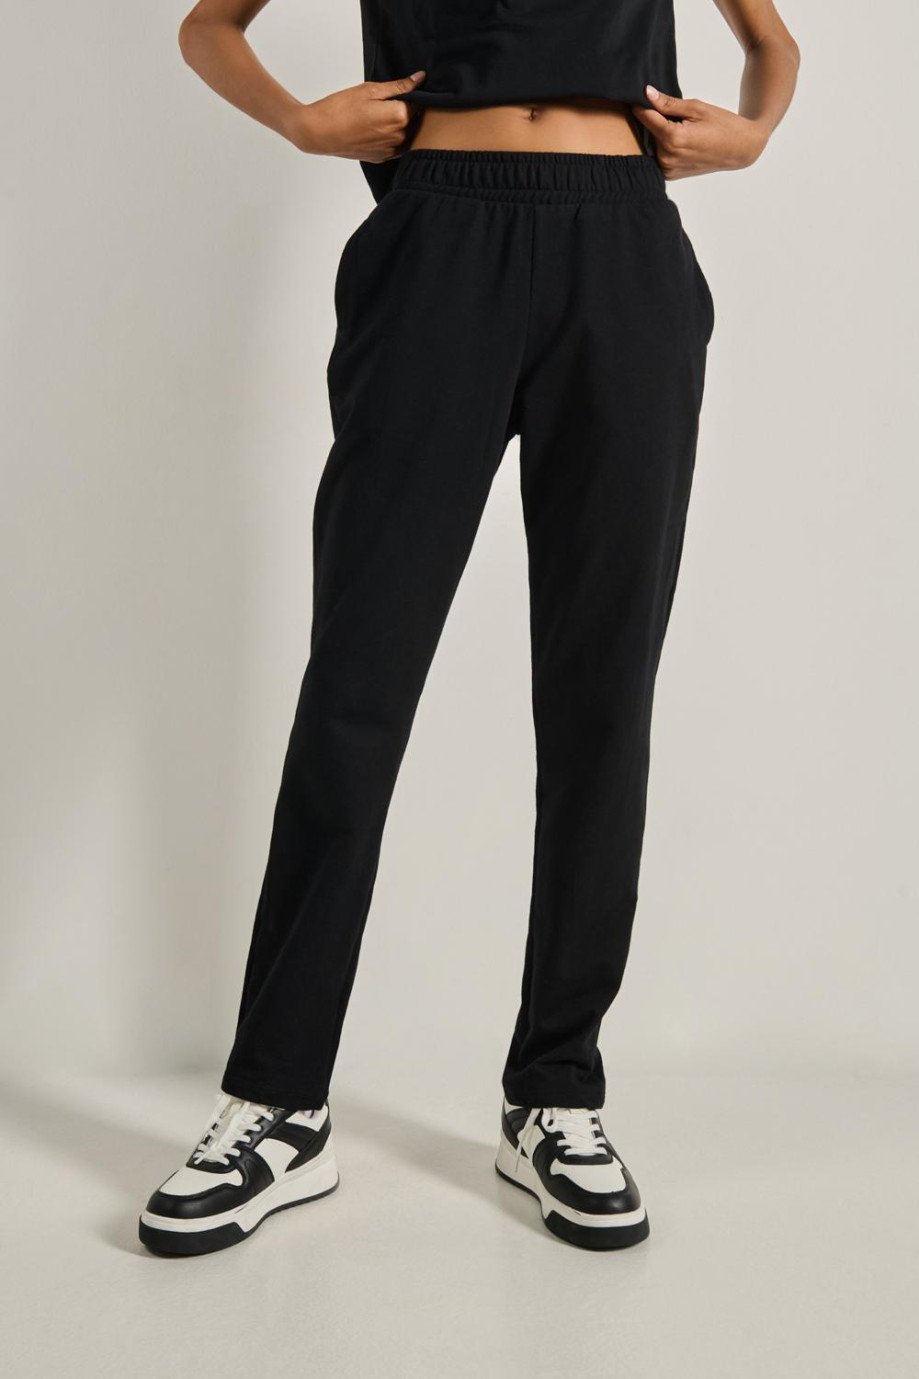 Pantalón jogger bota recta negro con cintura elástica